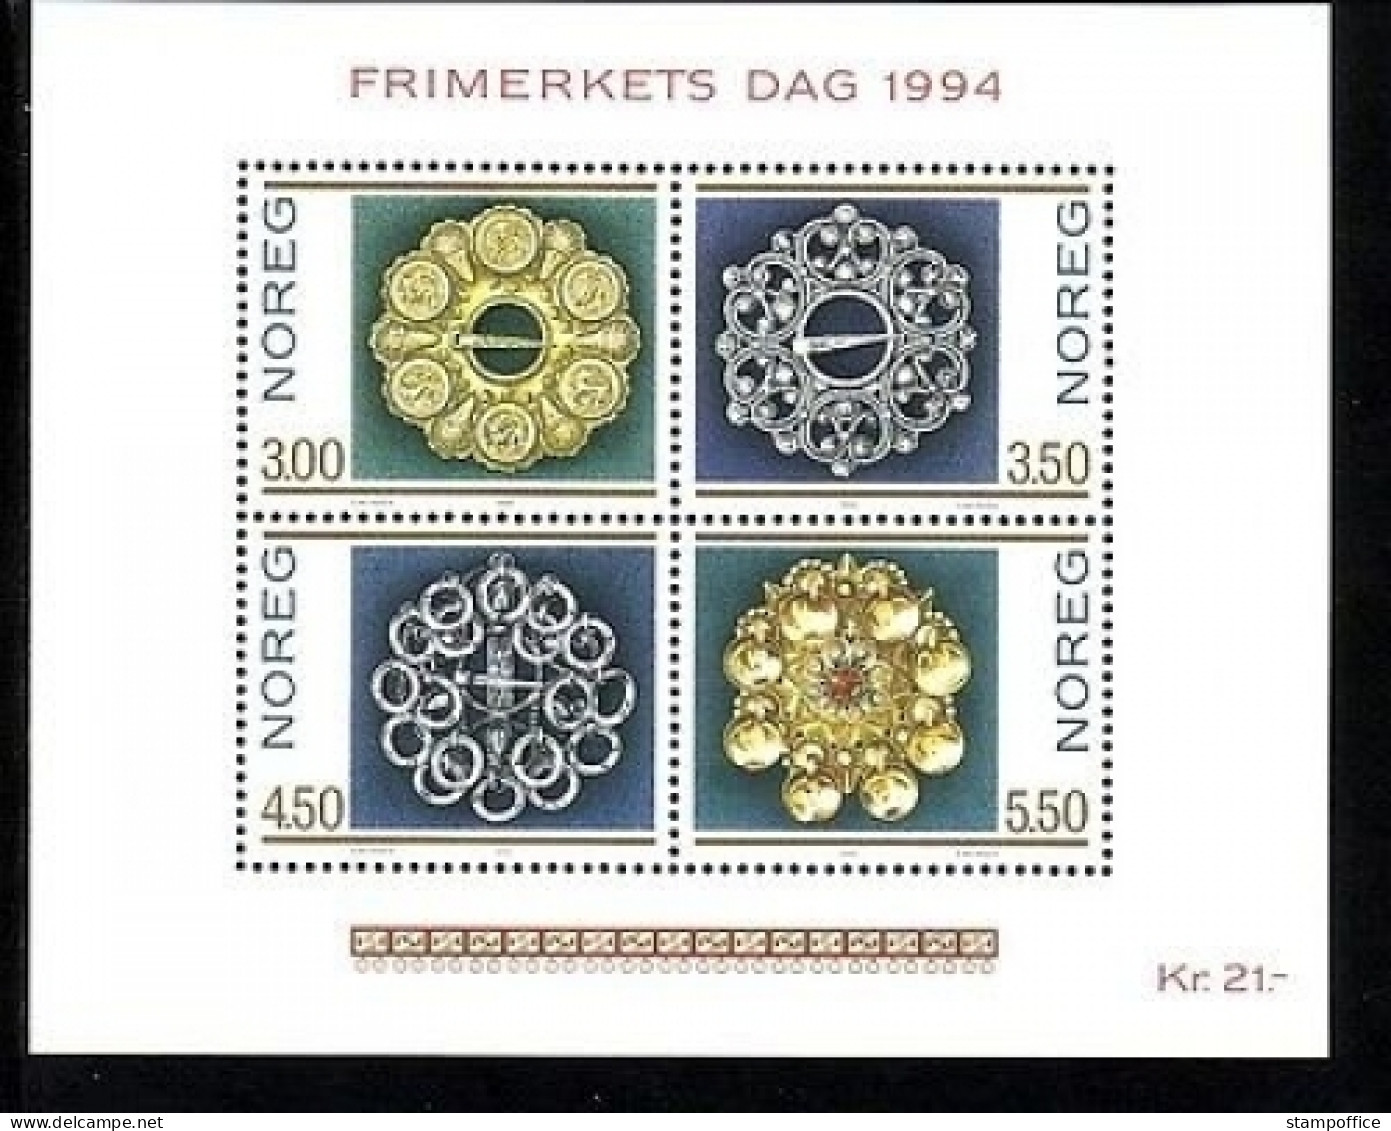 NORWEGEN BLOCK 21 POSTFRISCH(MINT) TAG DER BRIEFMARKE 1994 - TRACHTENSILBER - Blocks & Sheetlets